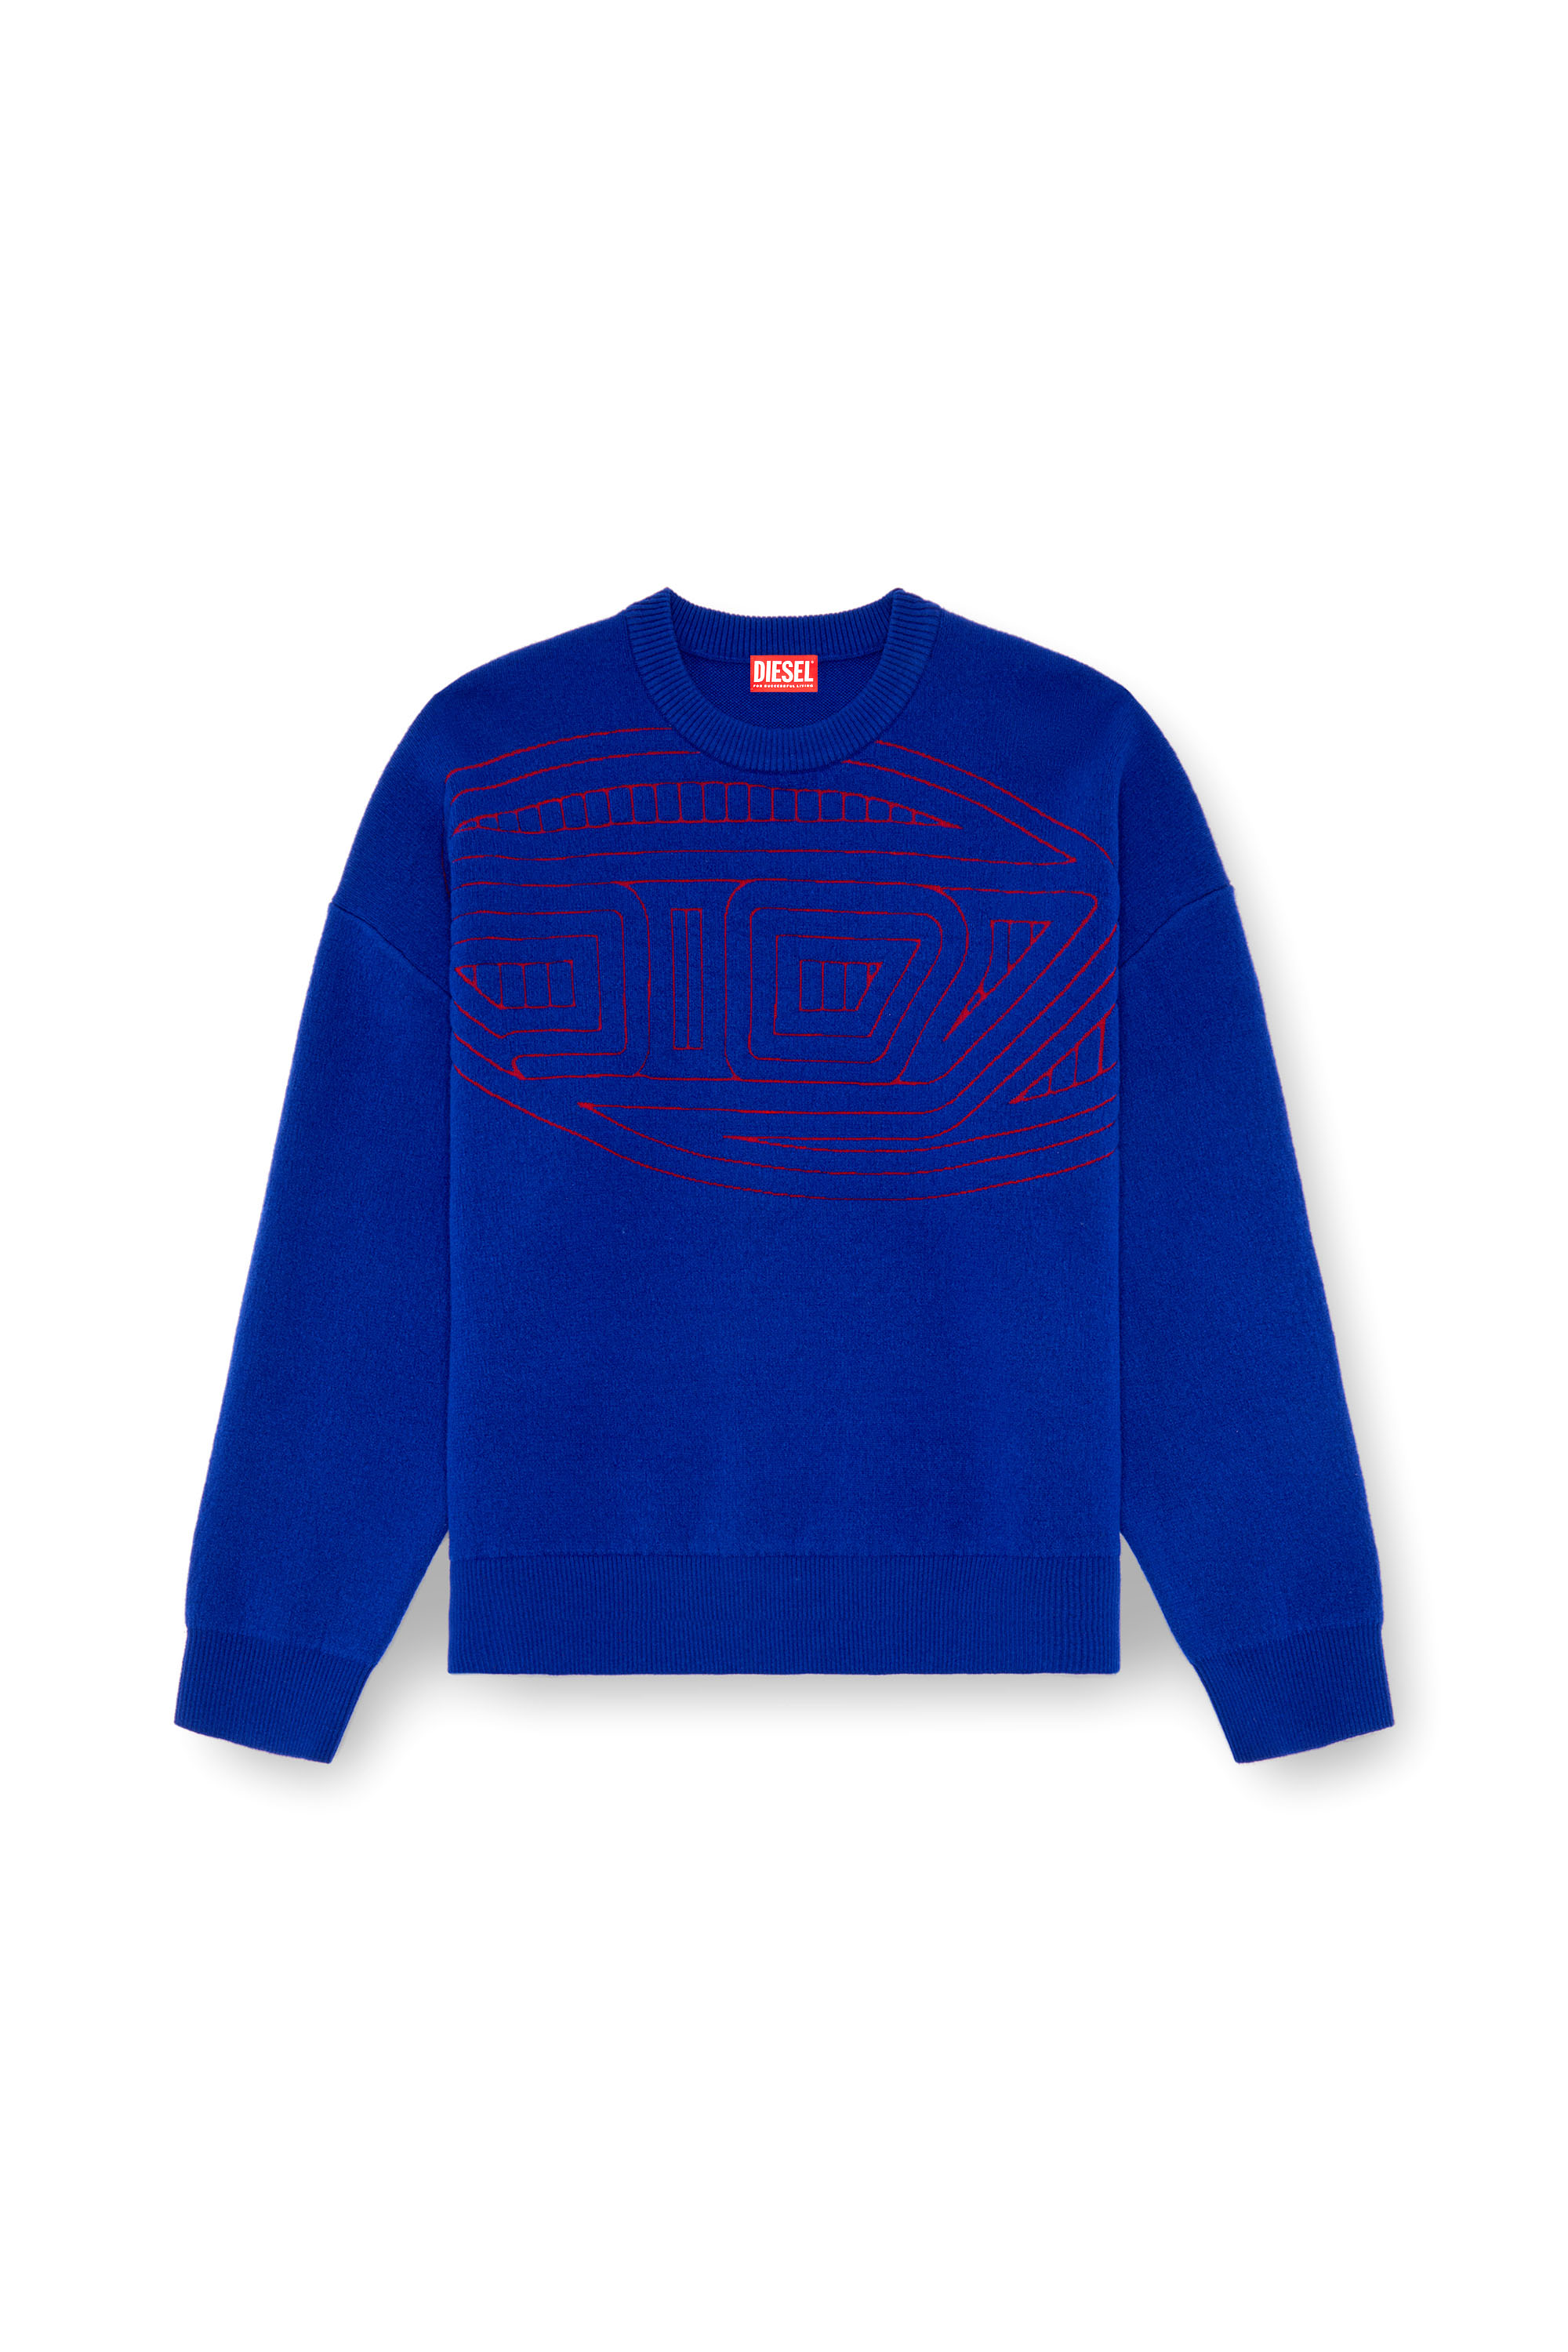 Diesel - K-RATIO, Hombre Jersey de mezcla de lana con logotipo gráfico in Azul marino - Image 3